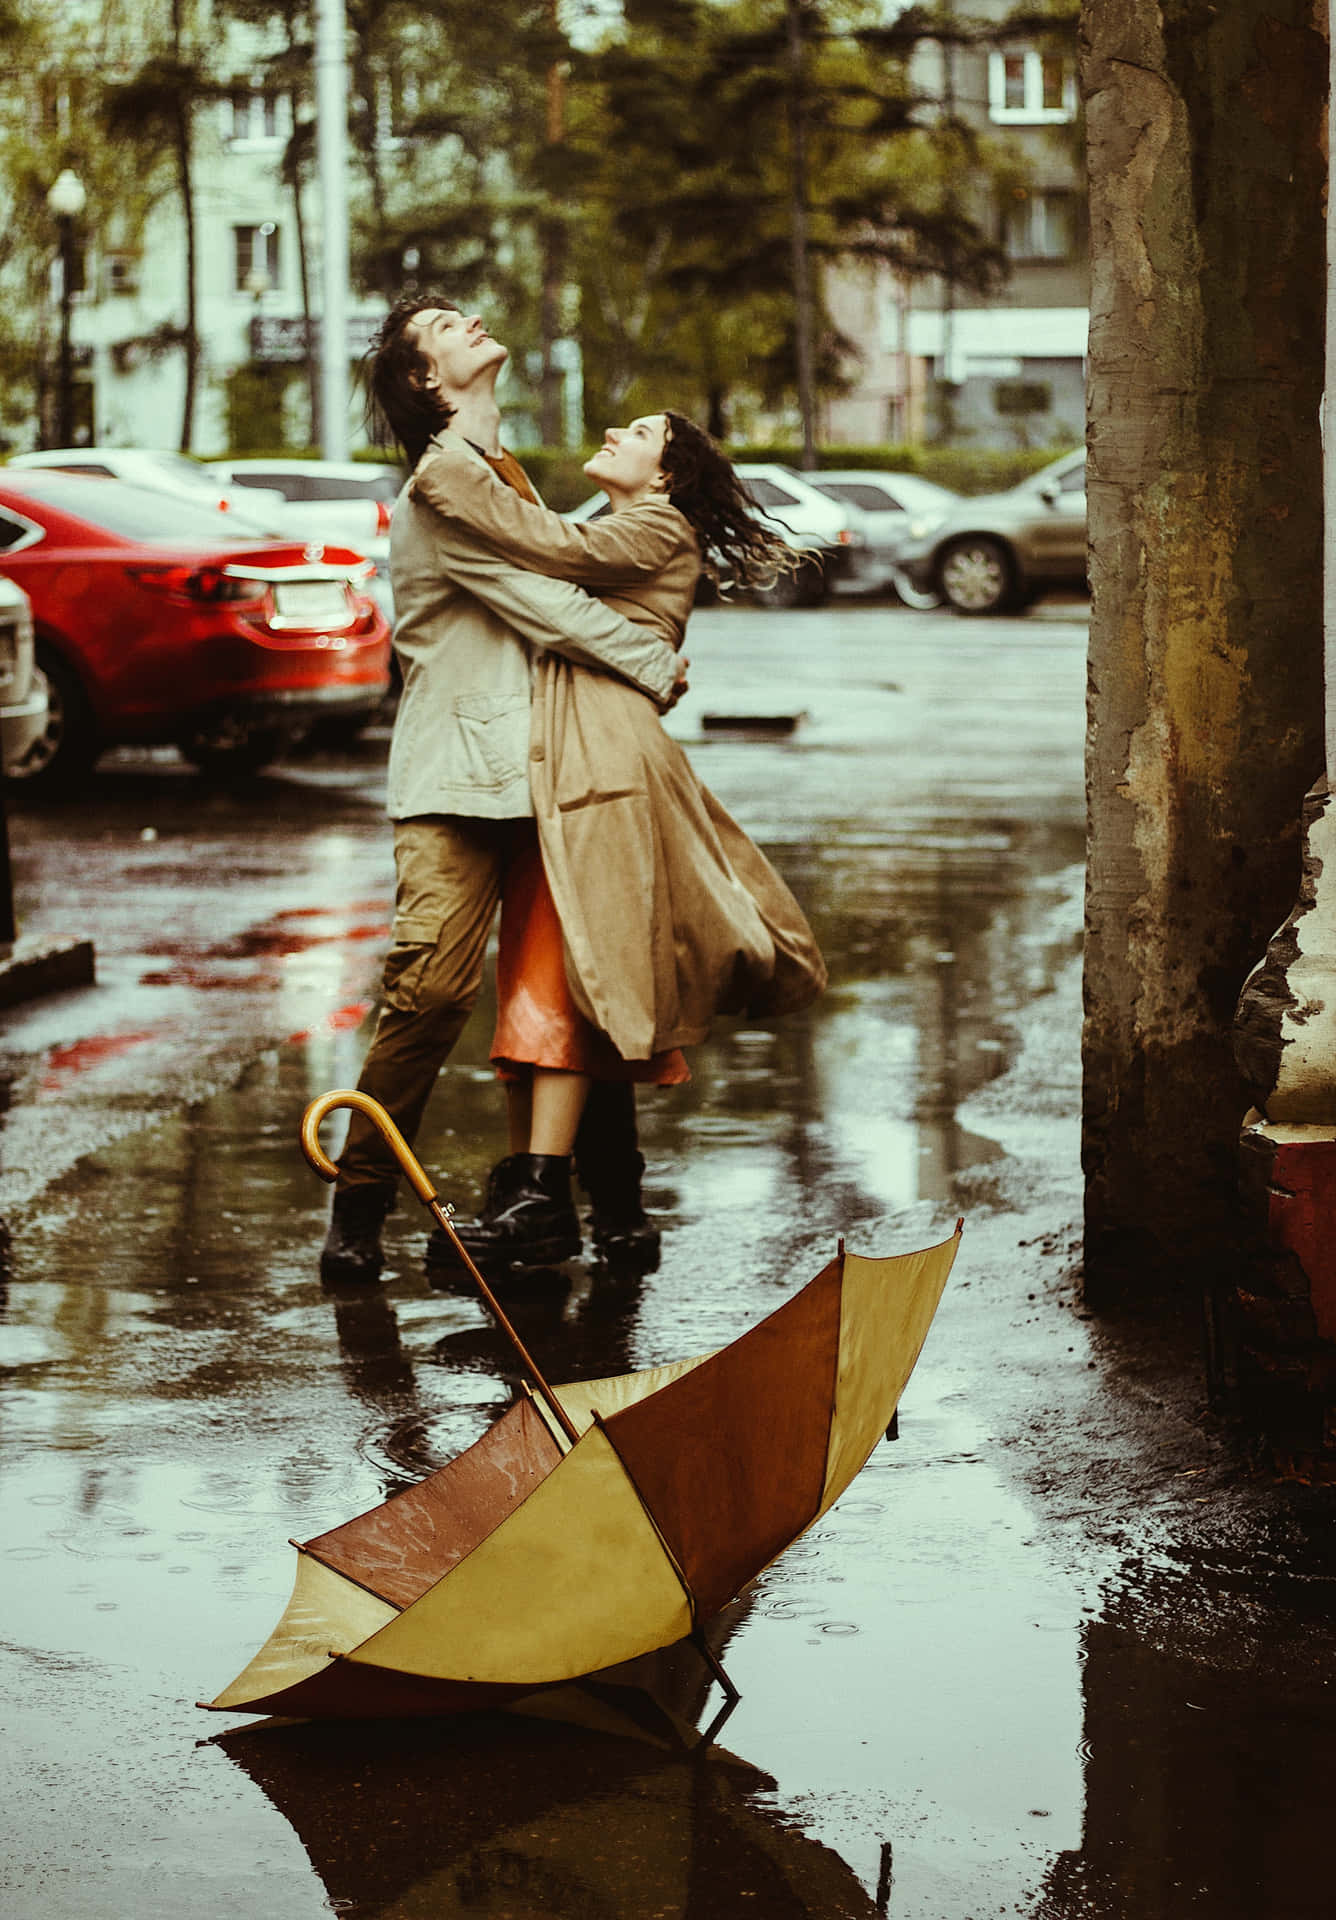 A romantic moment in the rain.